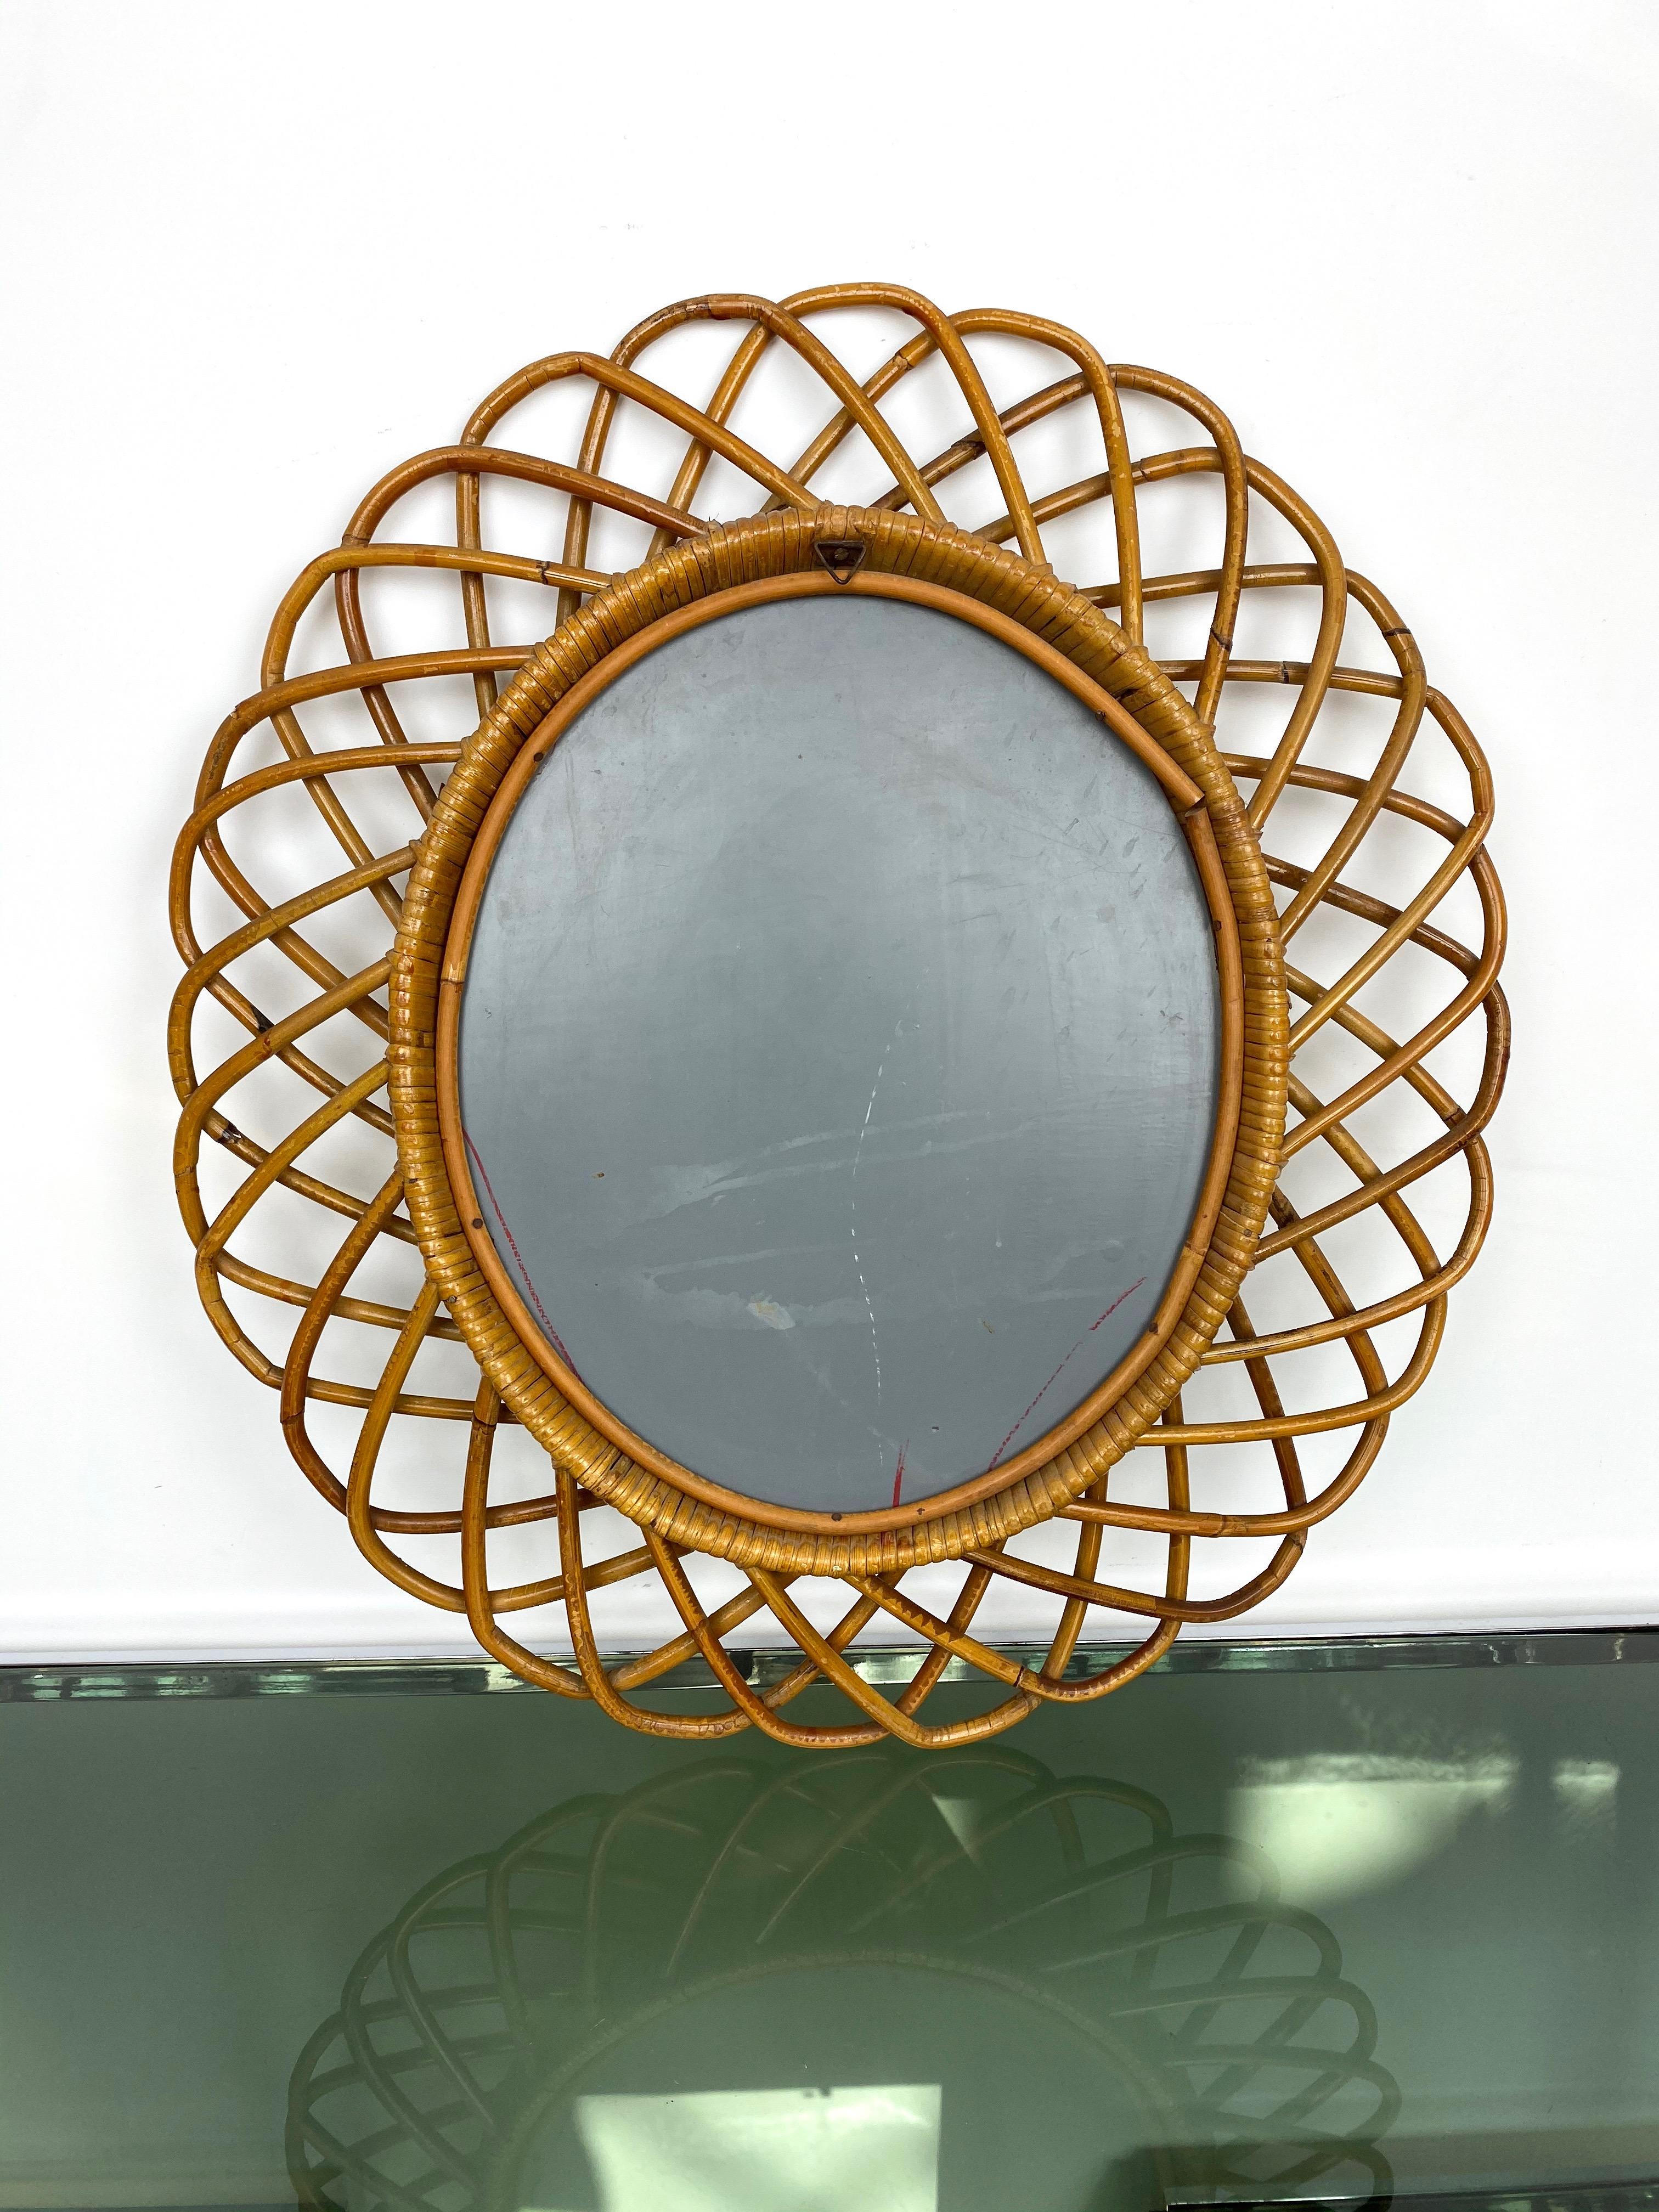 Mid-20th Century Rattan and Bamboo Wall Mirror, Italy, 1960s Italian Riviera